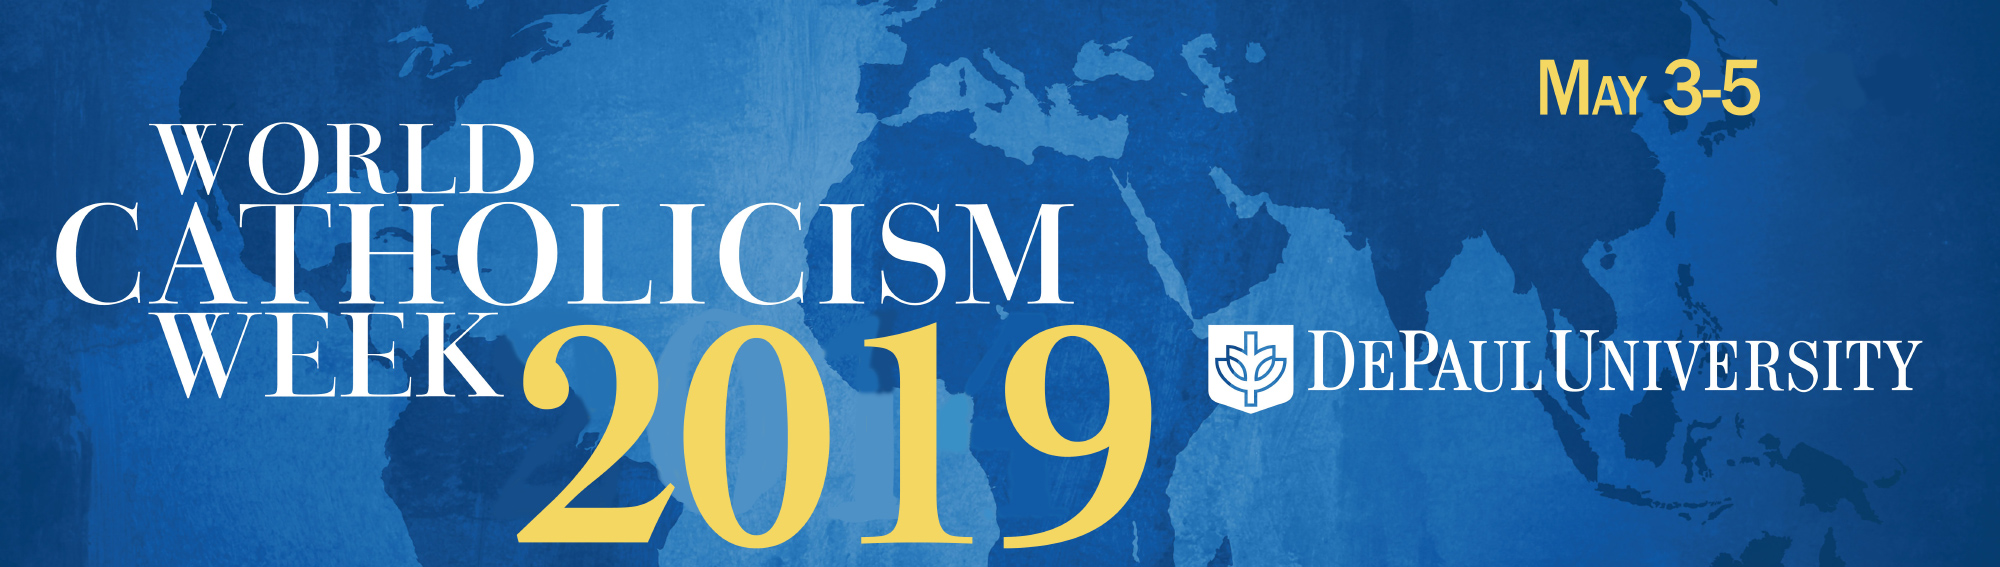 World Catholicism Week 2019